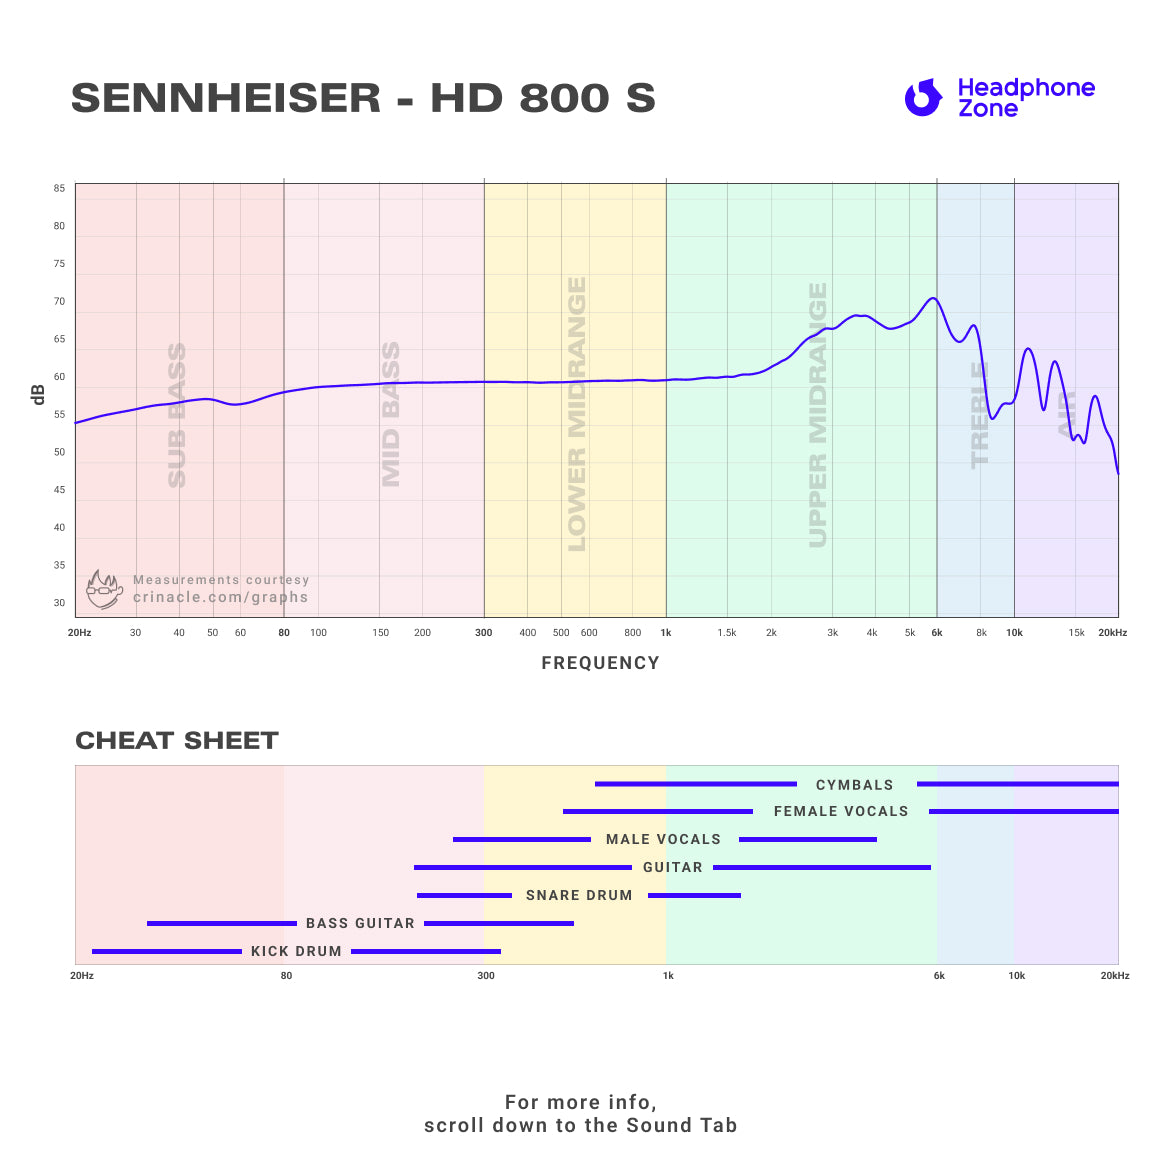 Sennheiser - HD 800 S